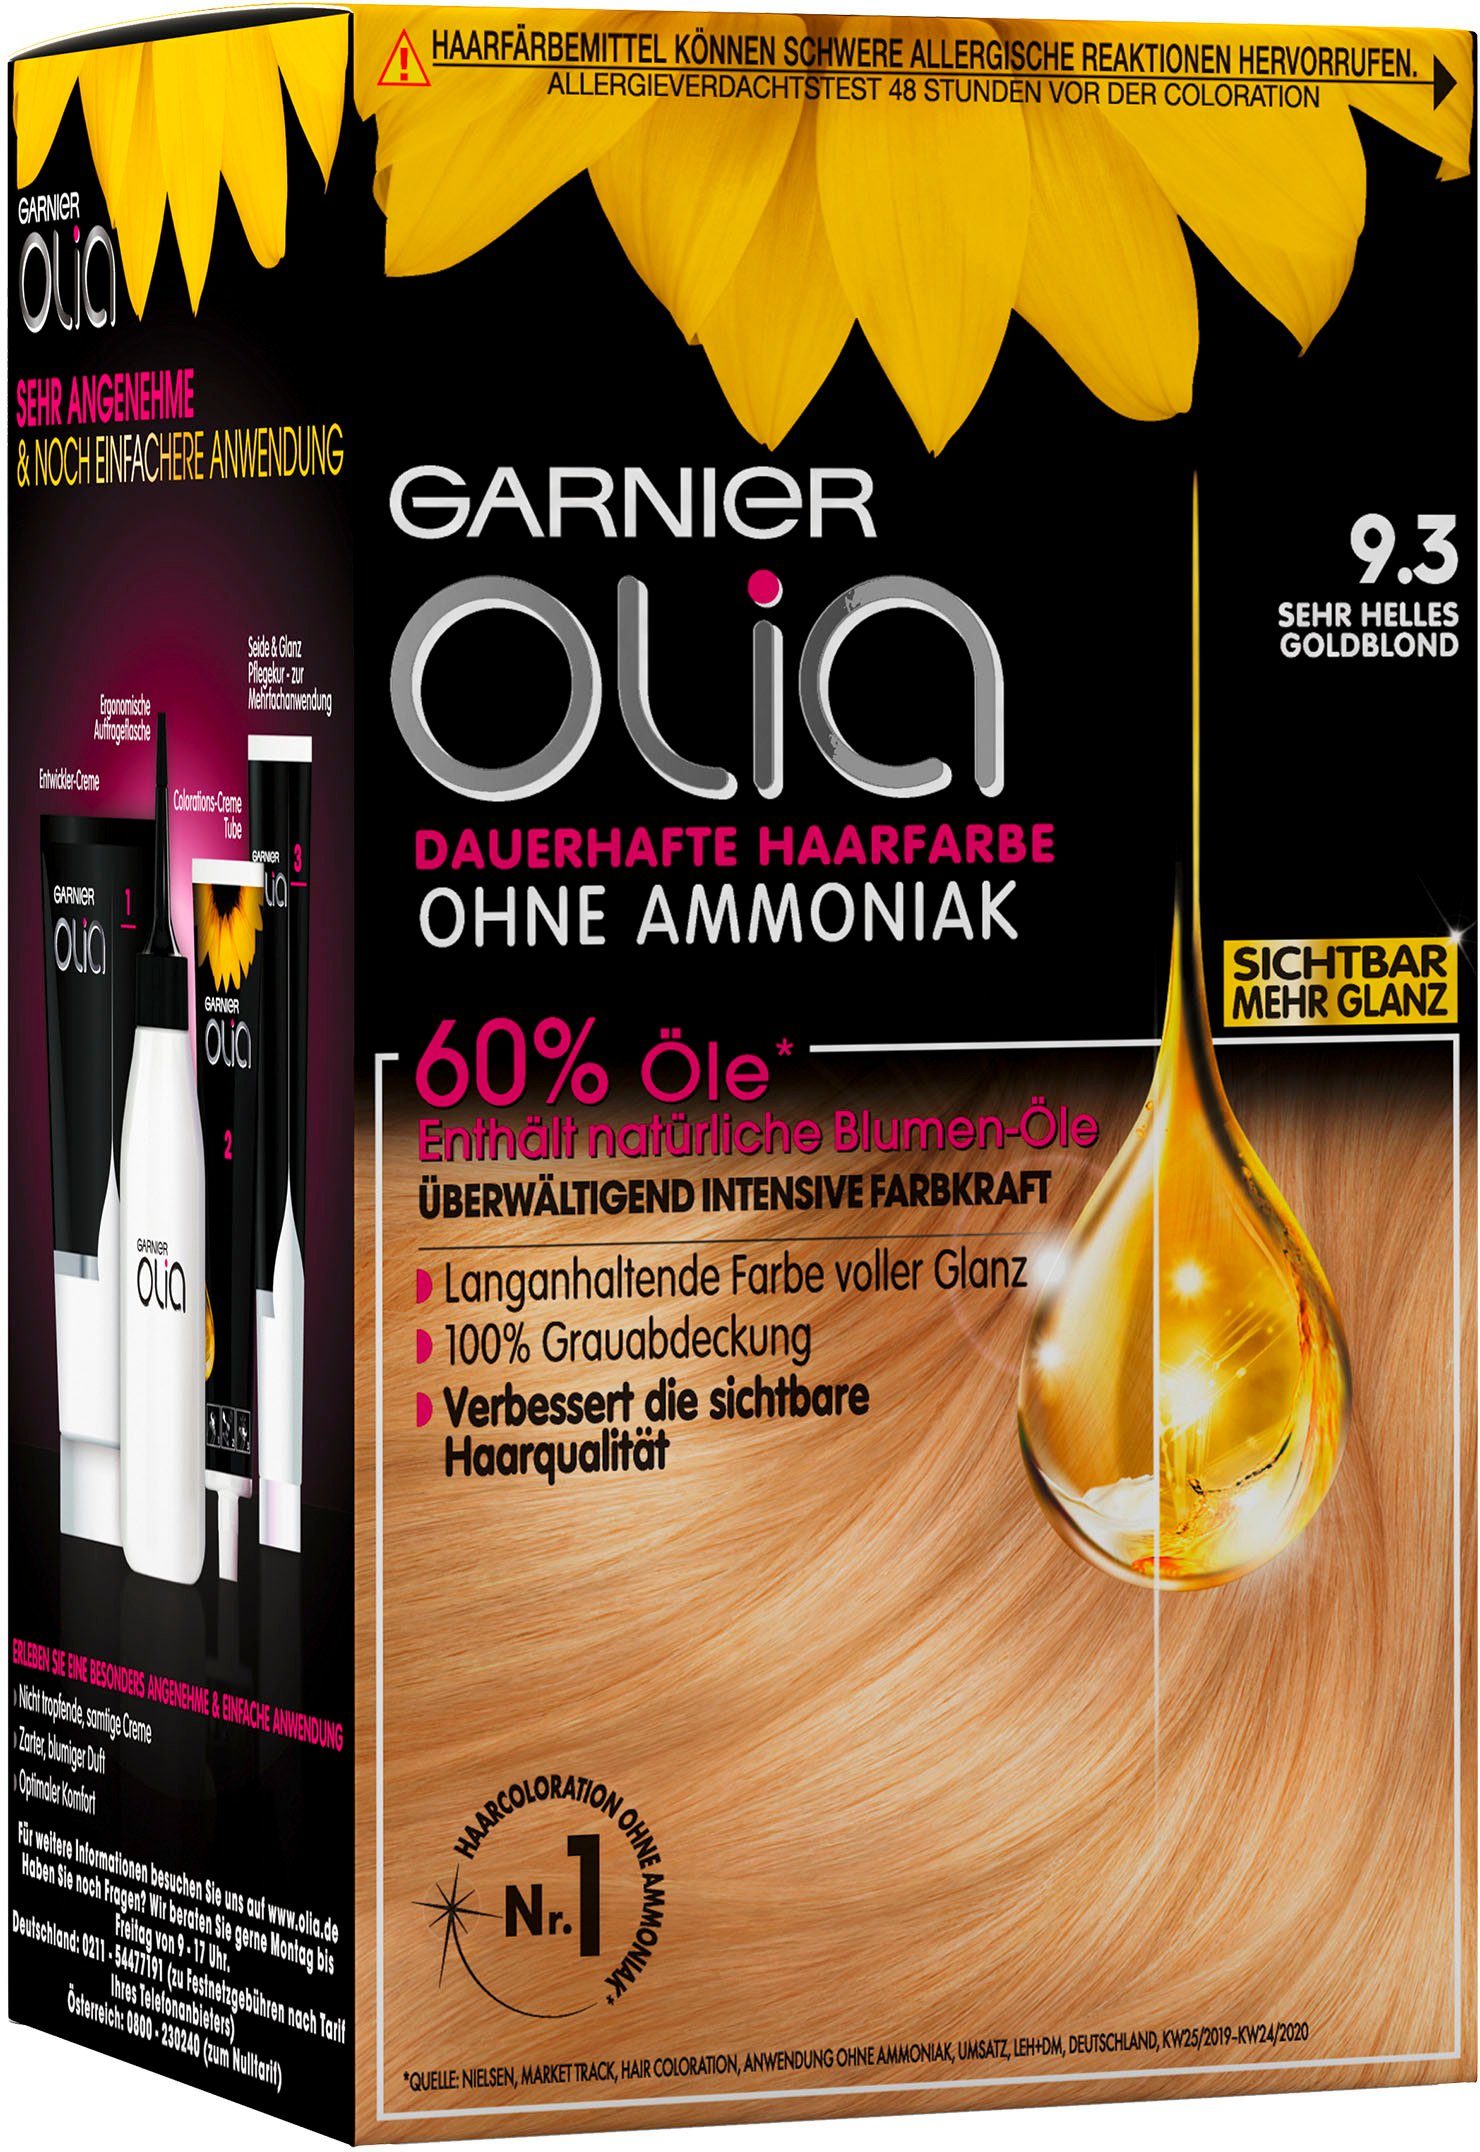 Verkaufspersonal GARNIER Coloration Olia dauerhafte Haarfarbe 9.3 Sehr helles goldblond